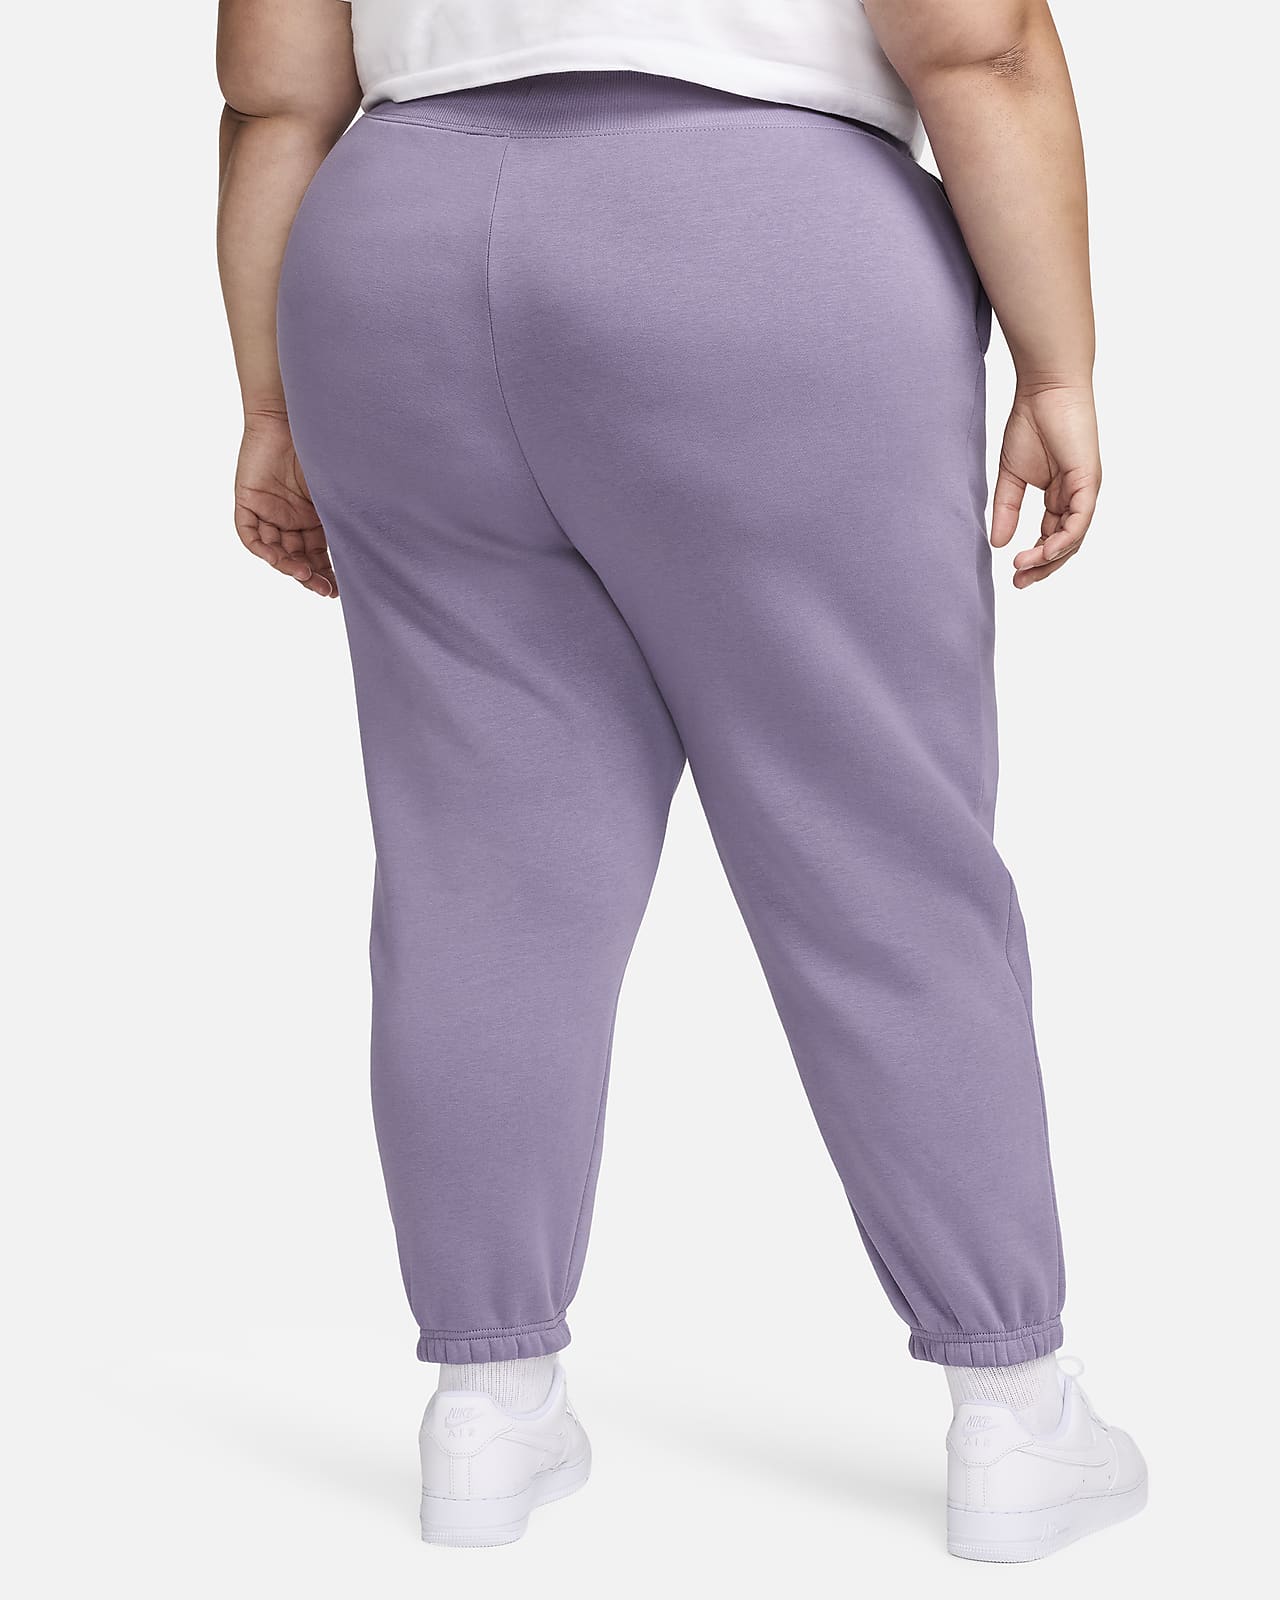 Nike Women's Sportswear Essential Fleece Sweatpants Grey Size XL BV4095-063